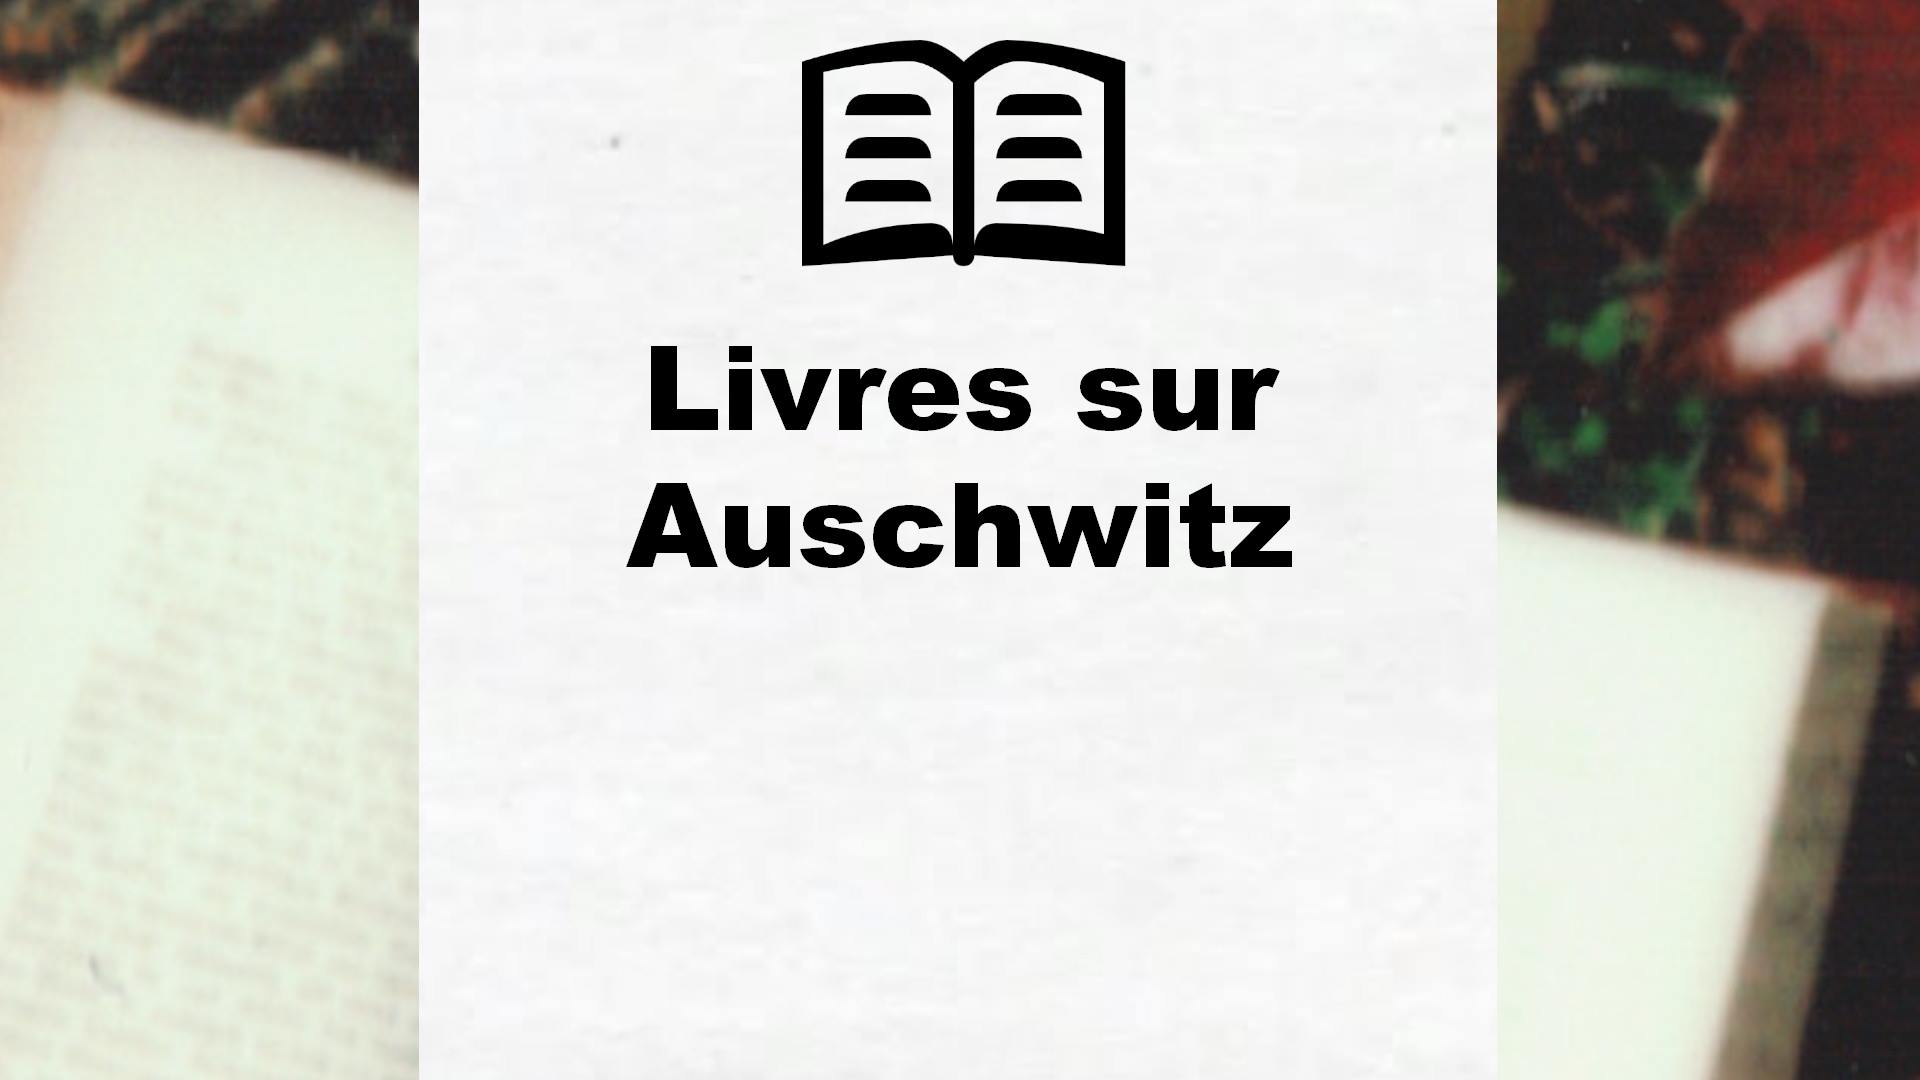 Livres sur Auschwitz